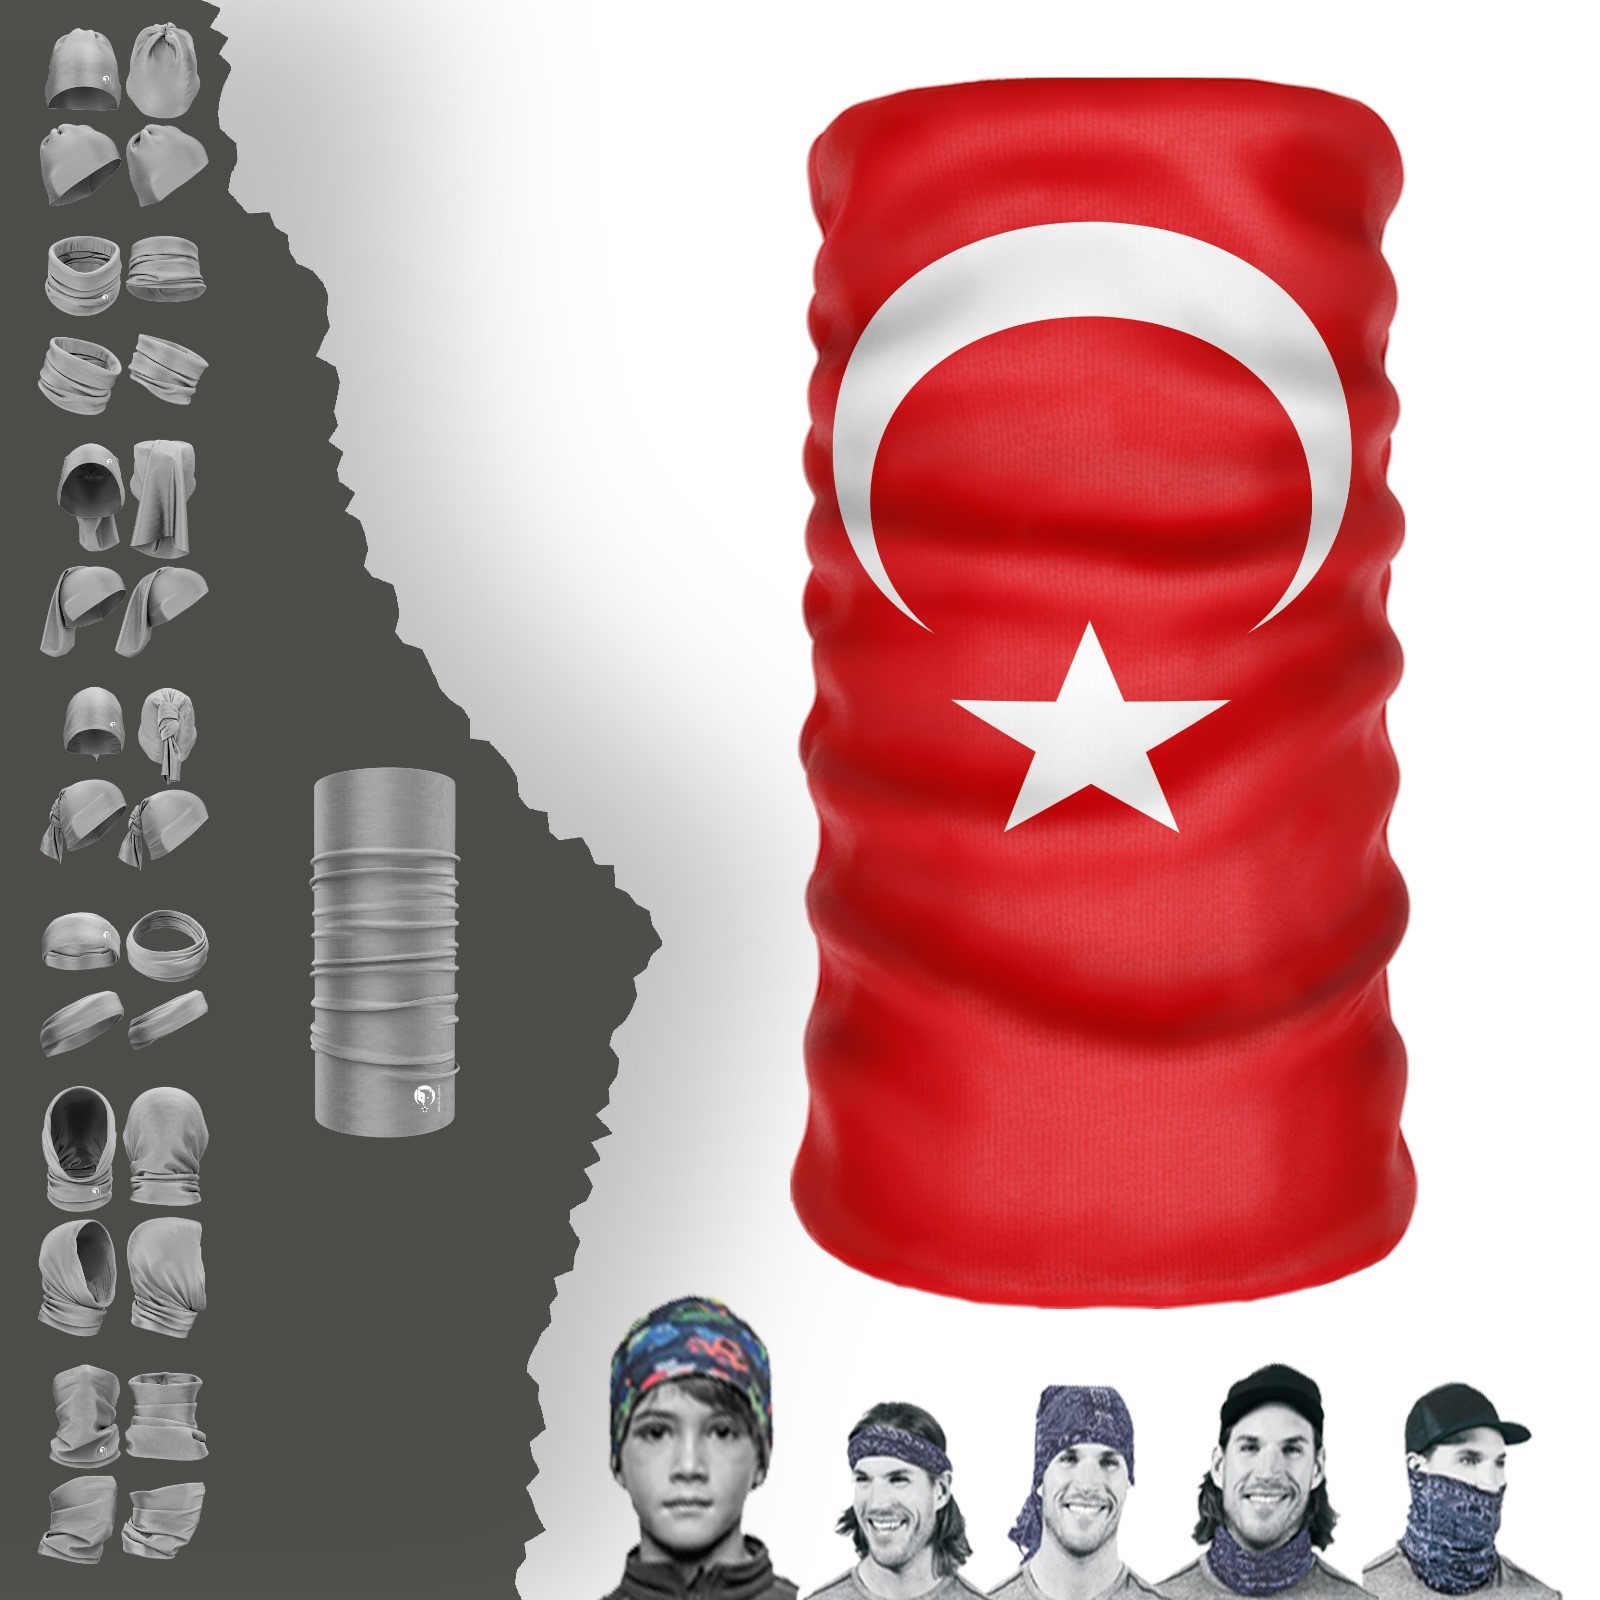 तुर्किये फ्लैग नेक कॉलर बेनी बंडाना मास्क बोनट बकल हेडबैंड